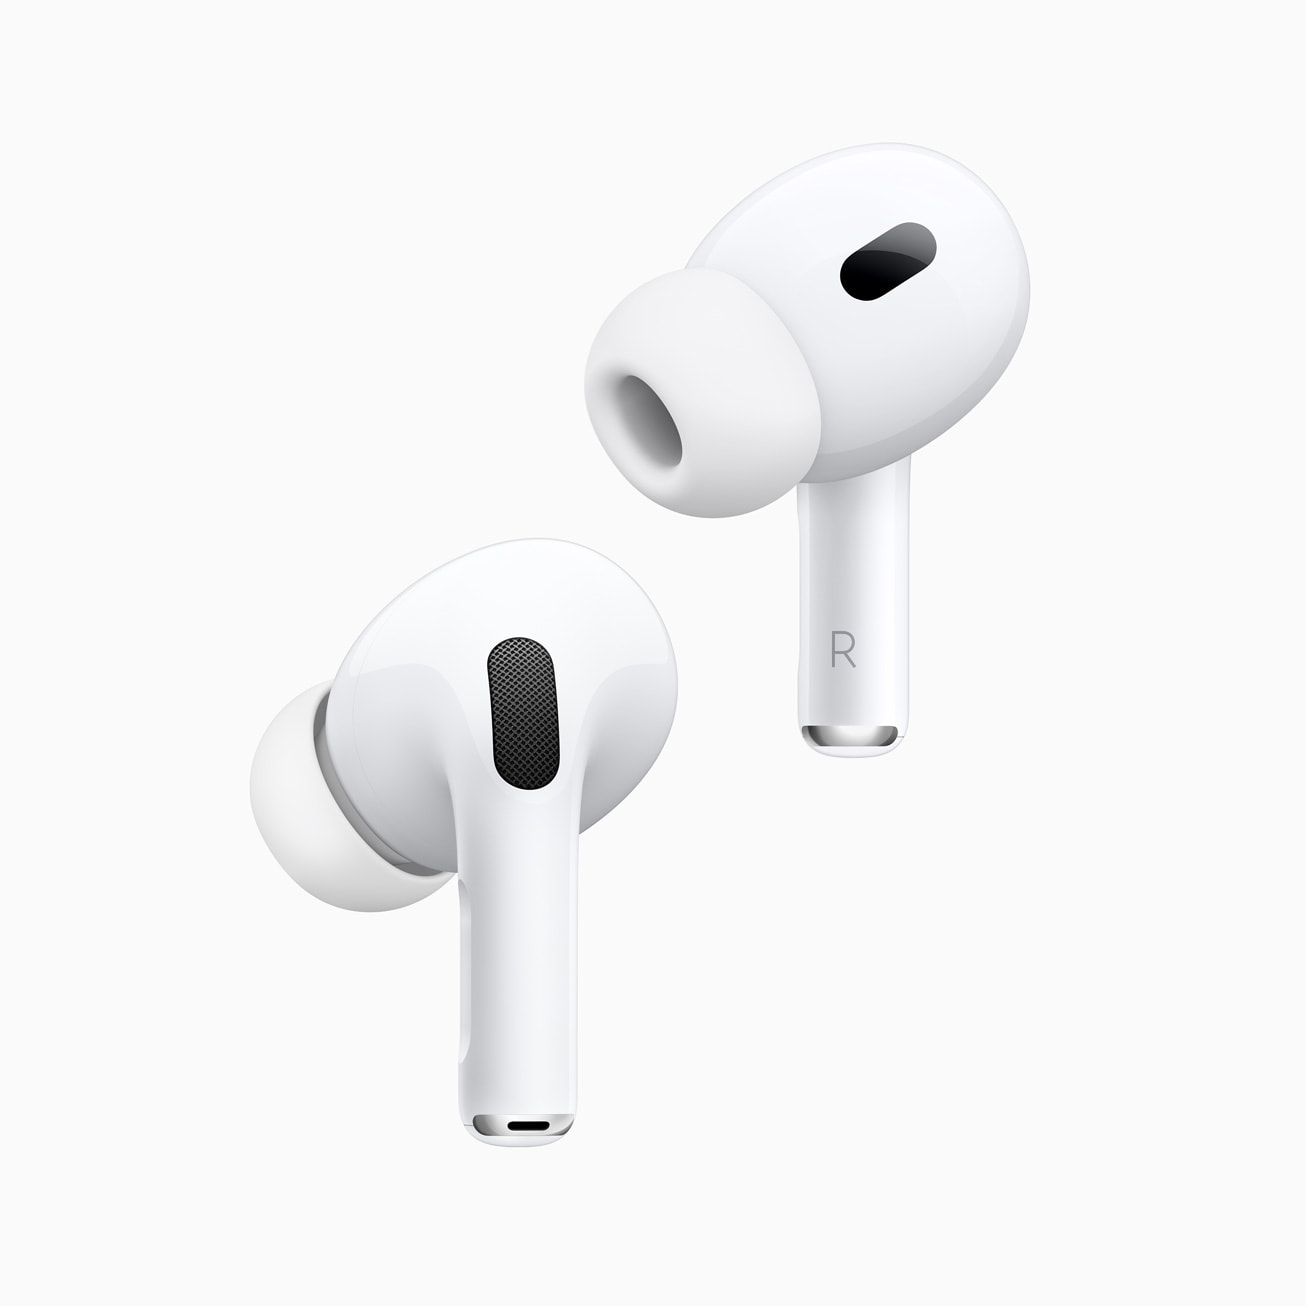 Pro 2 Review: Apple's Best Wireless Earbuds Got